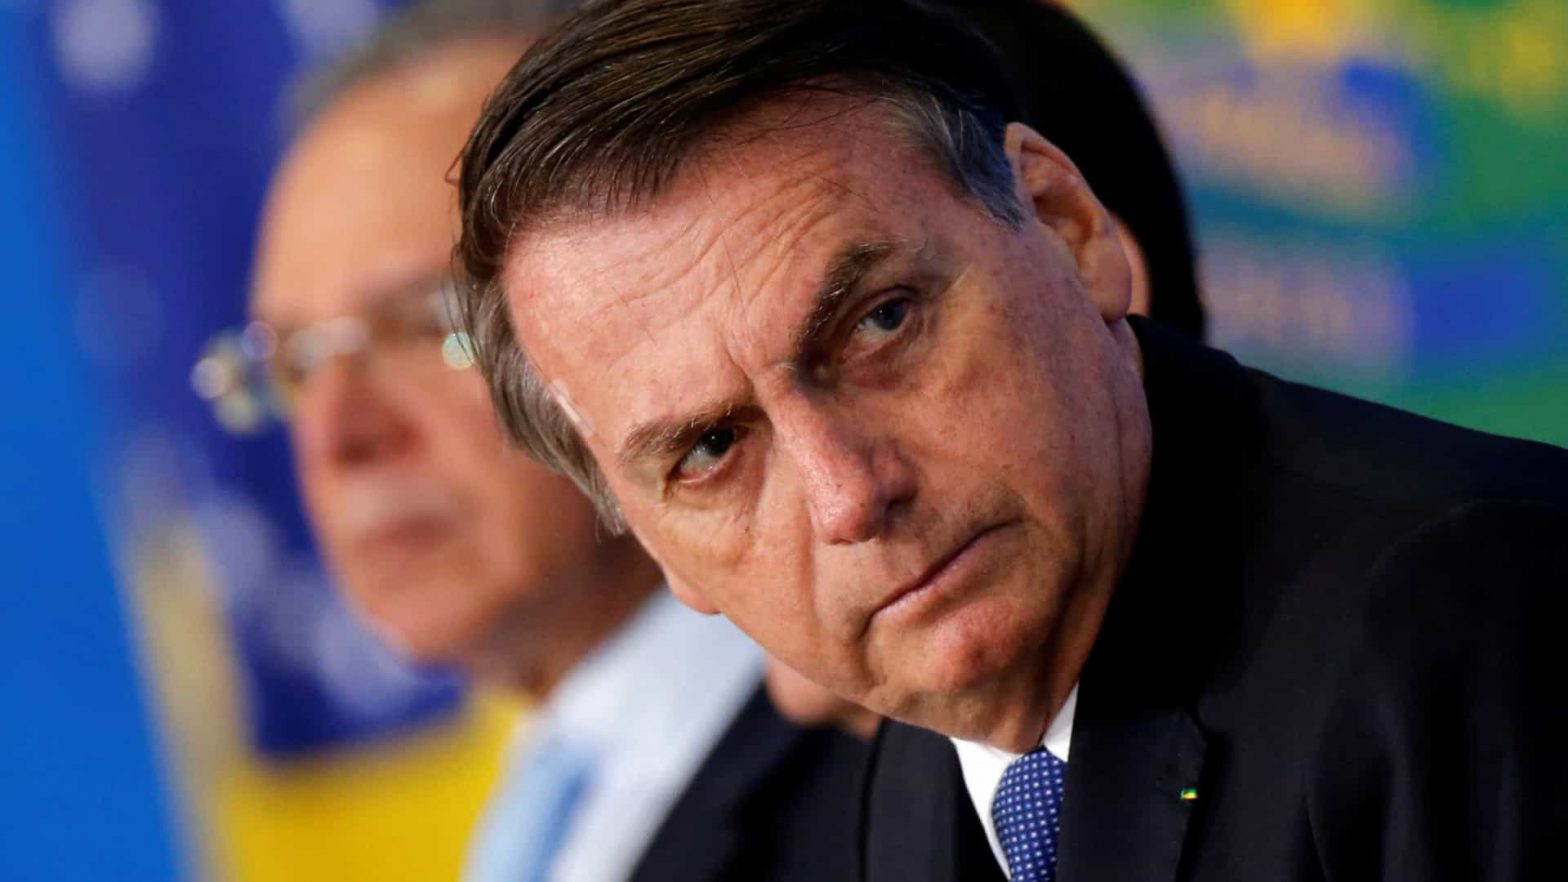 Sisejufe ajuíza ação contra Bolsonaro e demanda indenização aos servidores da Justiça Eleitoral, SISEJUFE